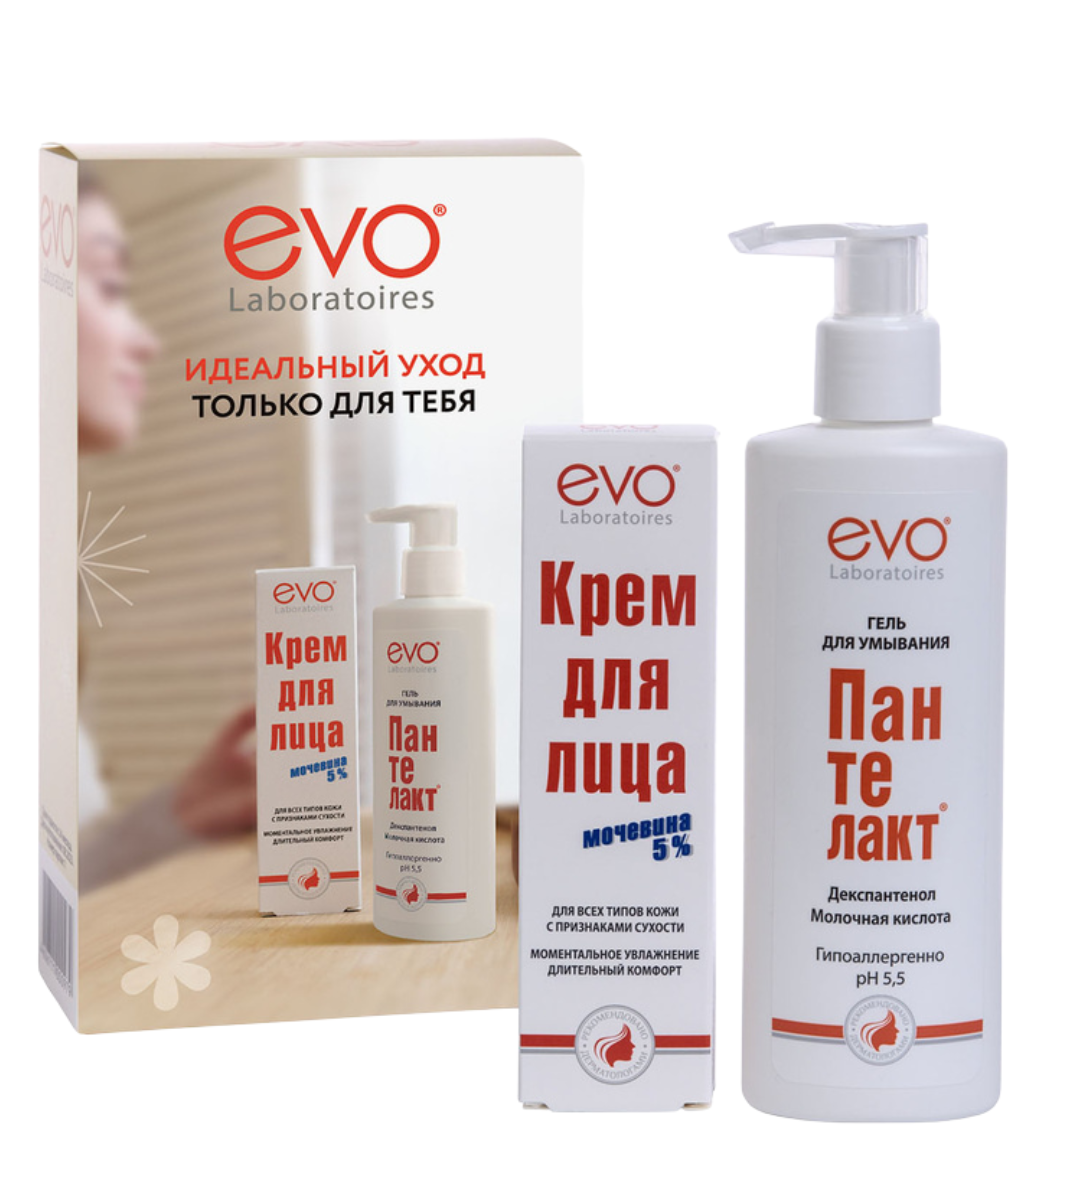 Набор Evo "Идеальный уход только для тебя" крем для лица + гель для умывания